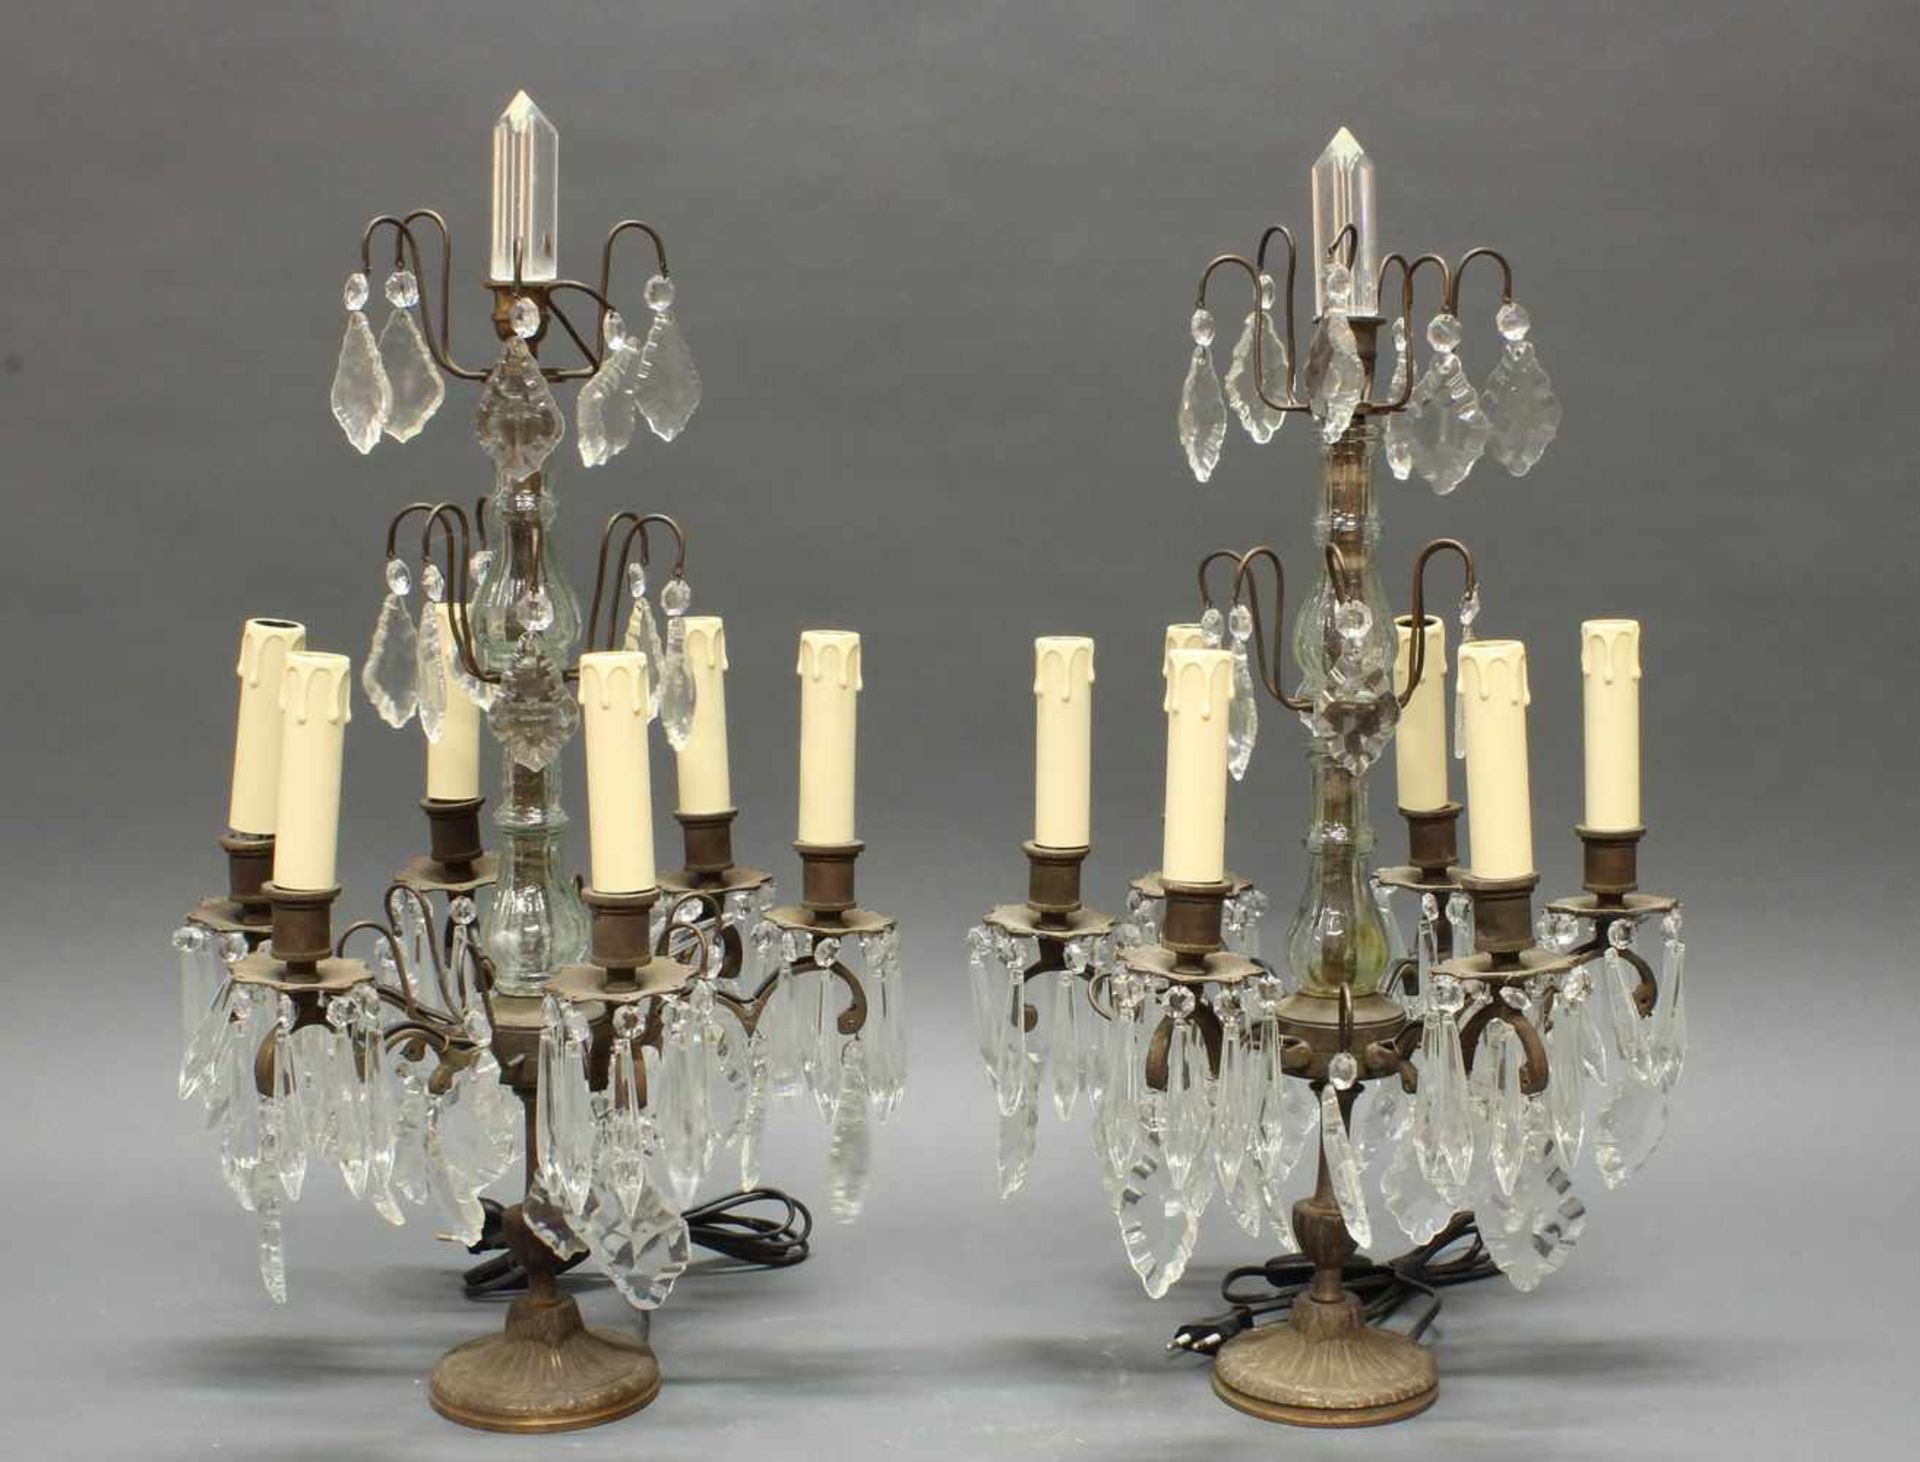 Paar Girandolen, französischer Stil, Metall, Glas, Kristall, sechsflammig, elektrifiziert, 62 cm - Image 2 of 2